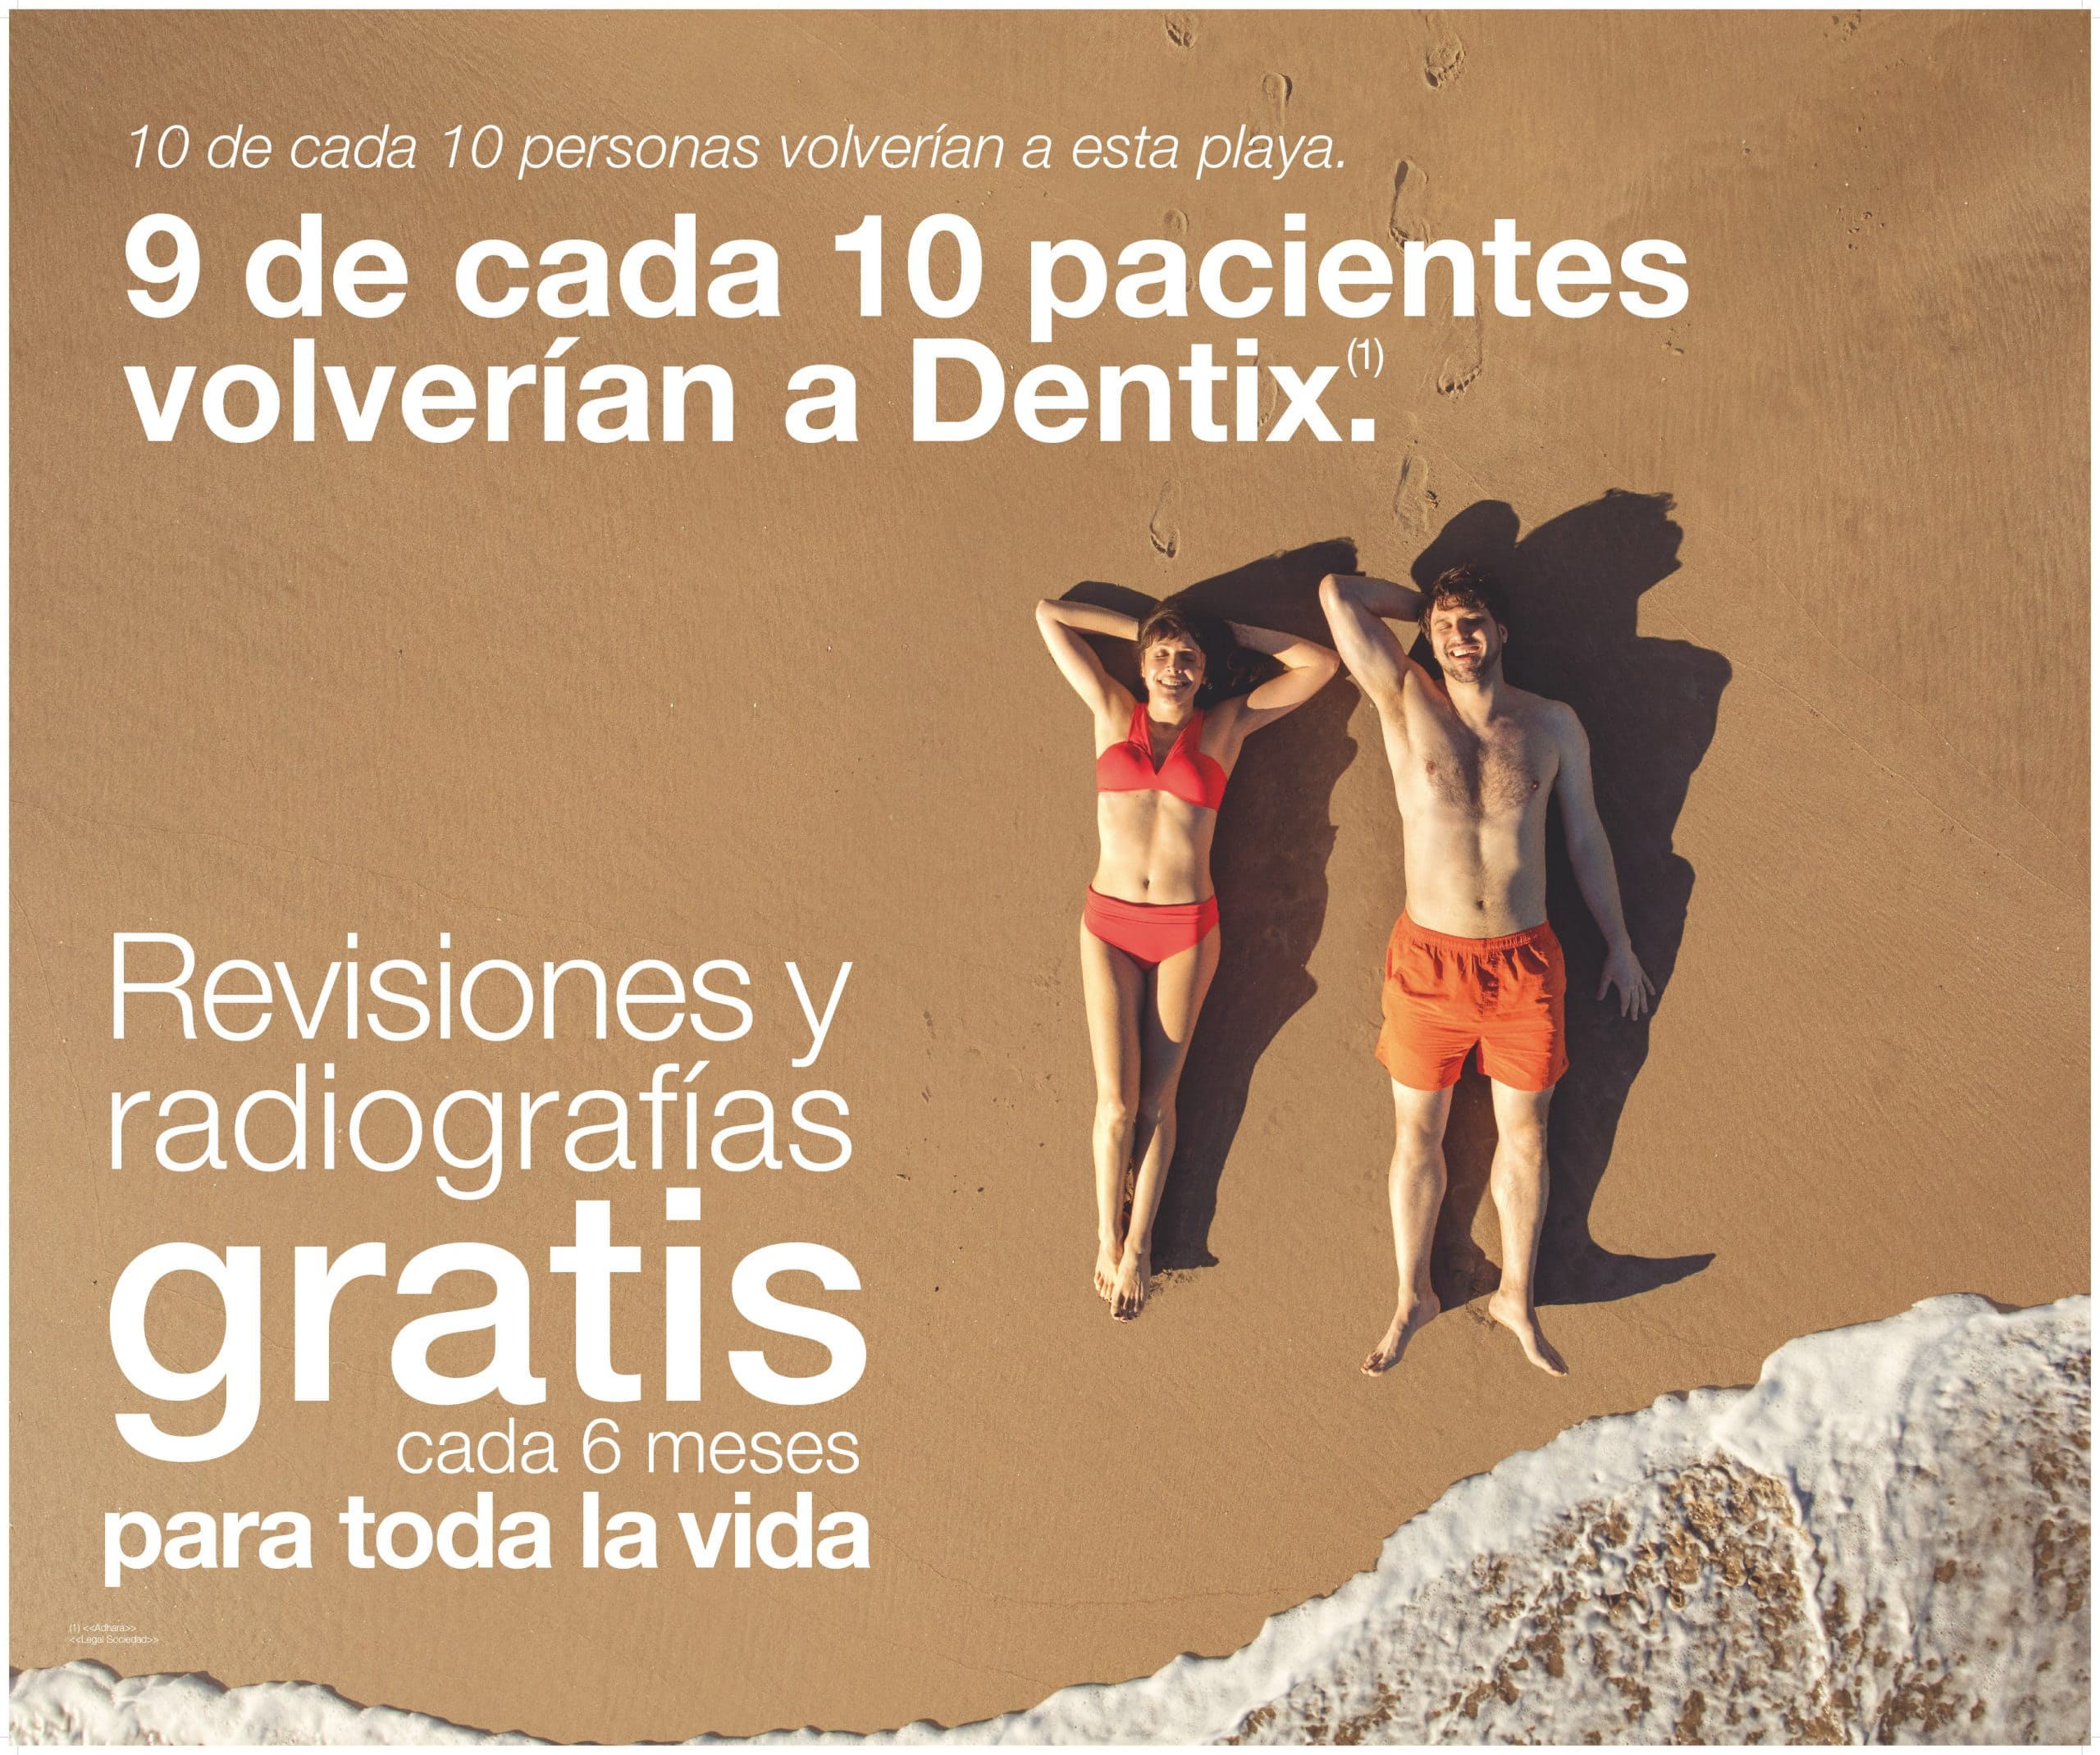 Dentiflex es una campaña publicitaria realizada por Alberto Van Stokkum junto a Enri Mür Studio para las clínicas dentales Dentix.